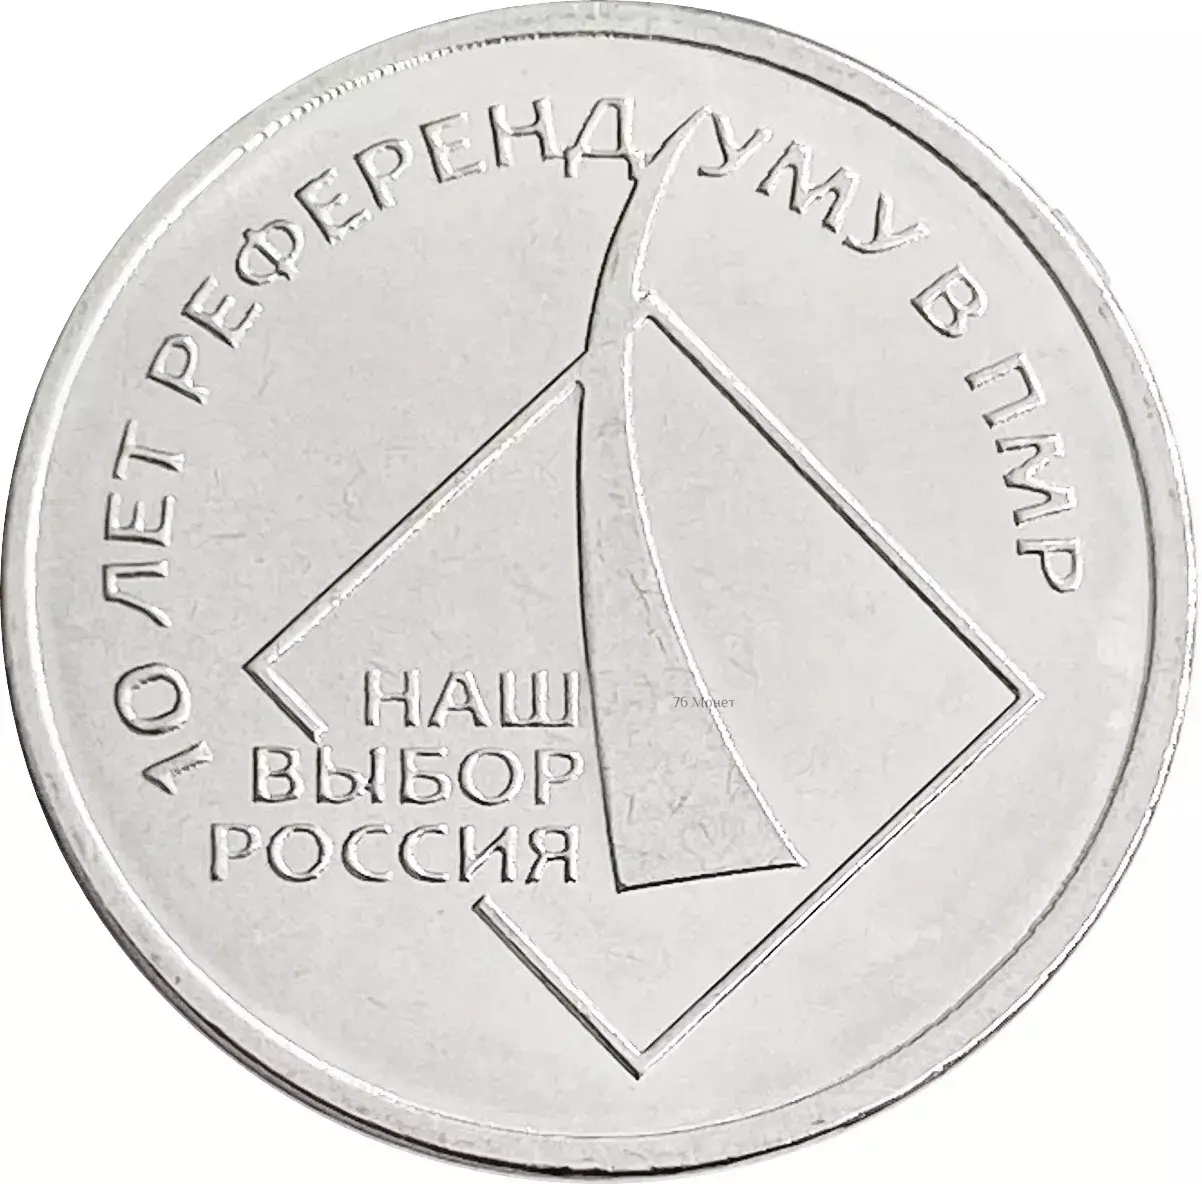 Suvorov theme in philately